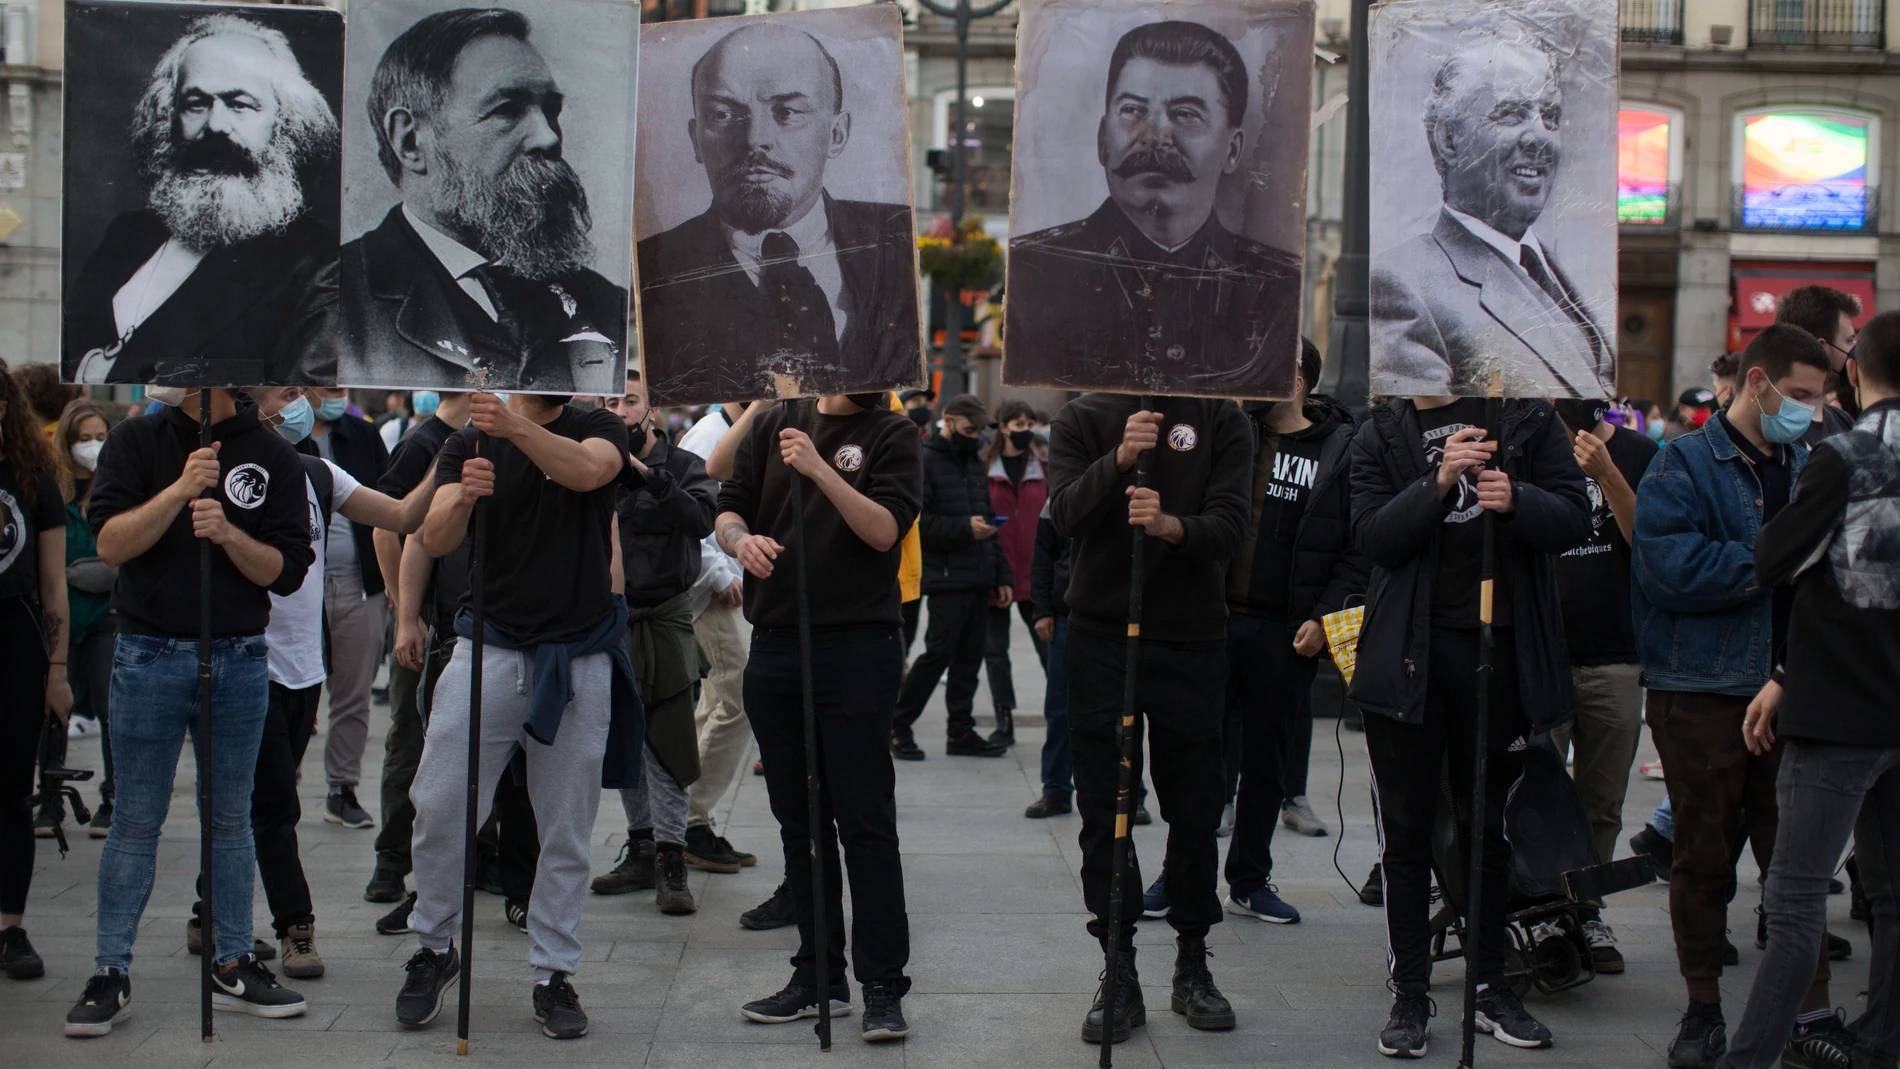 Imagen de la manifestación de Madrid con las imágenes de Marx, Engels, Lenin, Stalin y Hoxha.